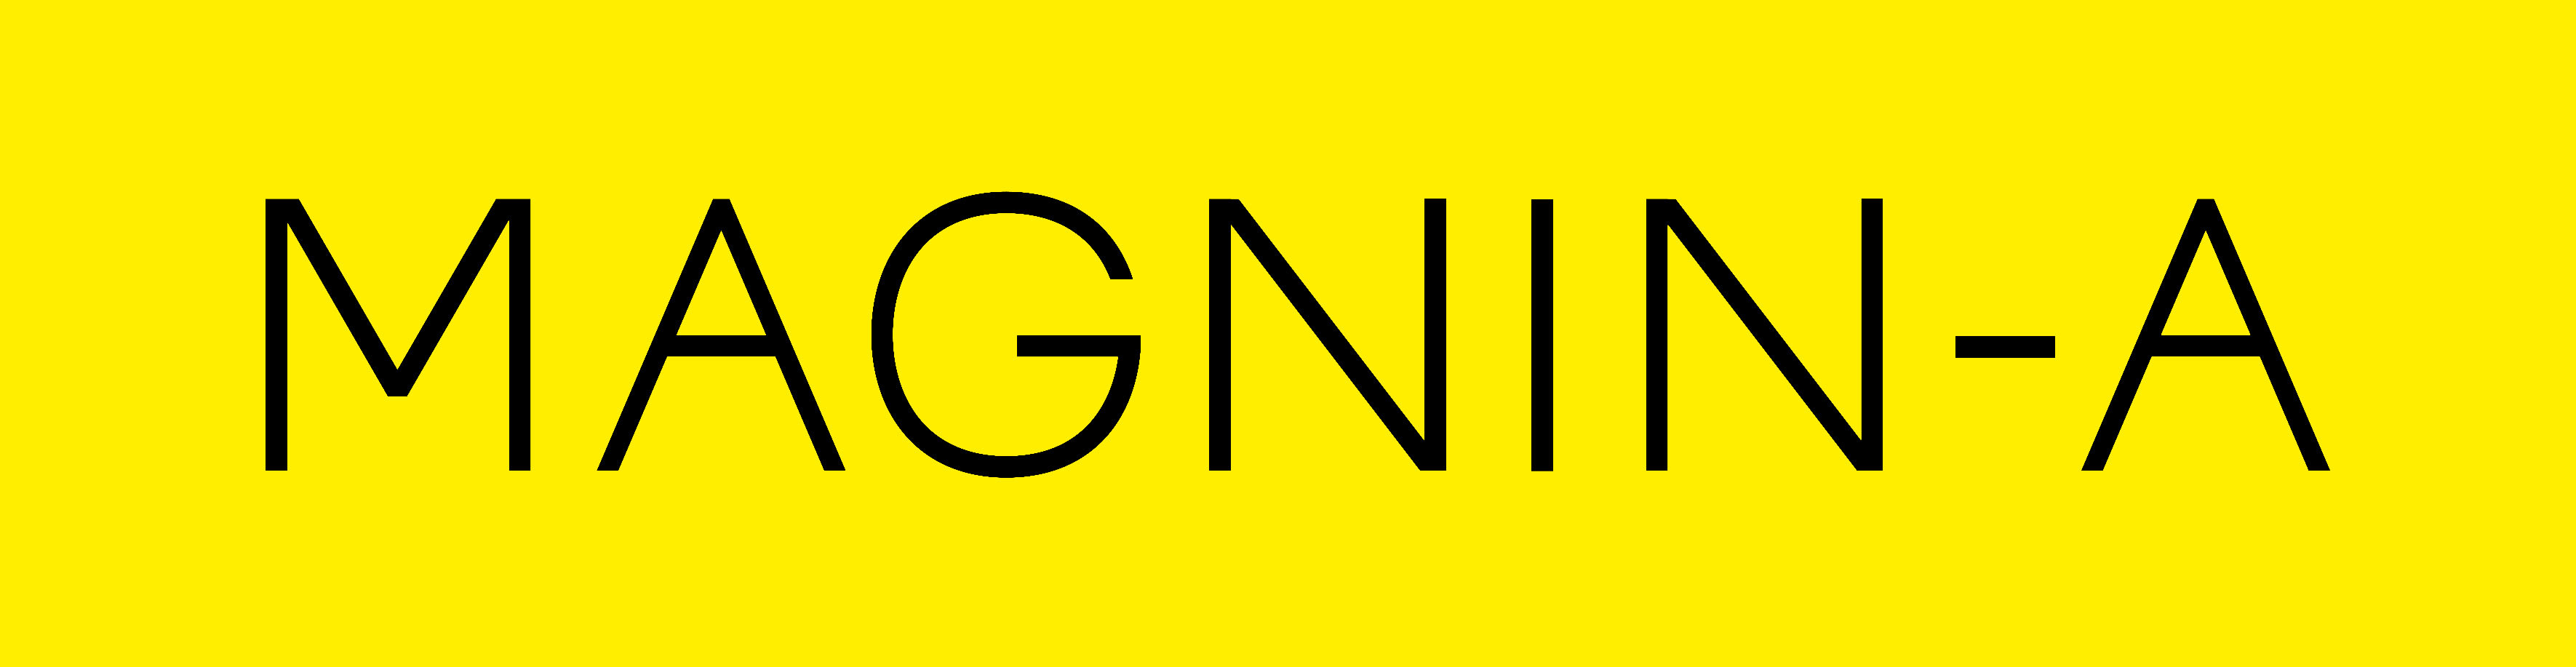 MAGNIN-A company logo